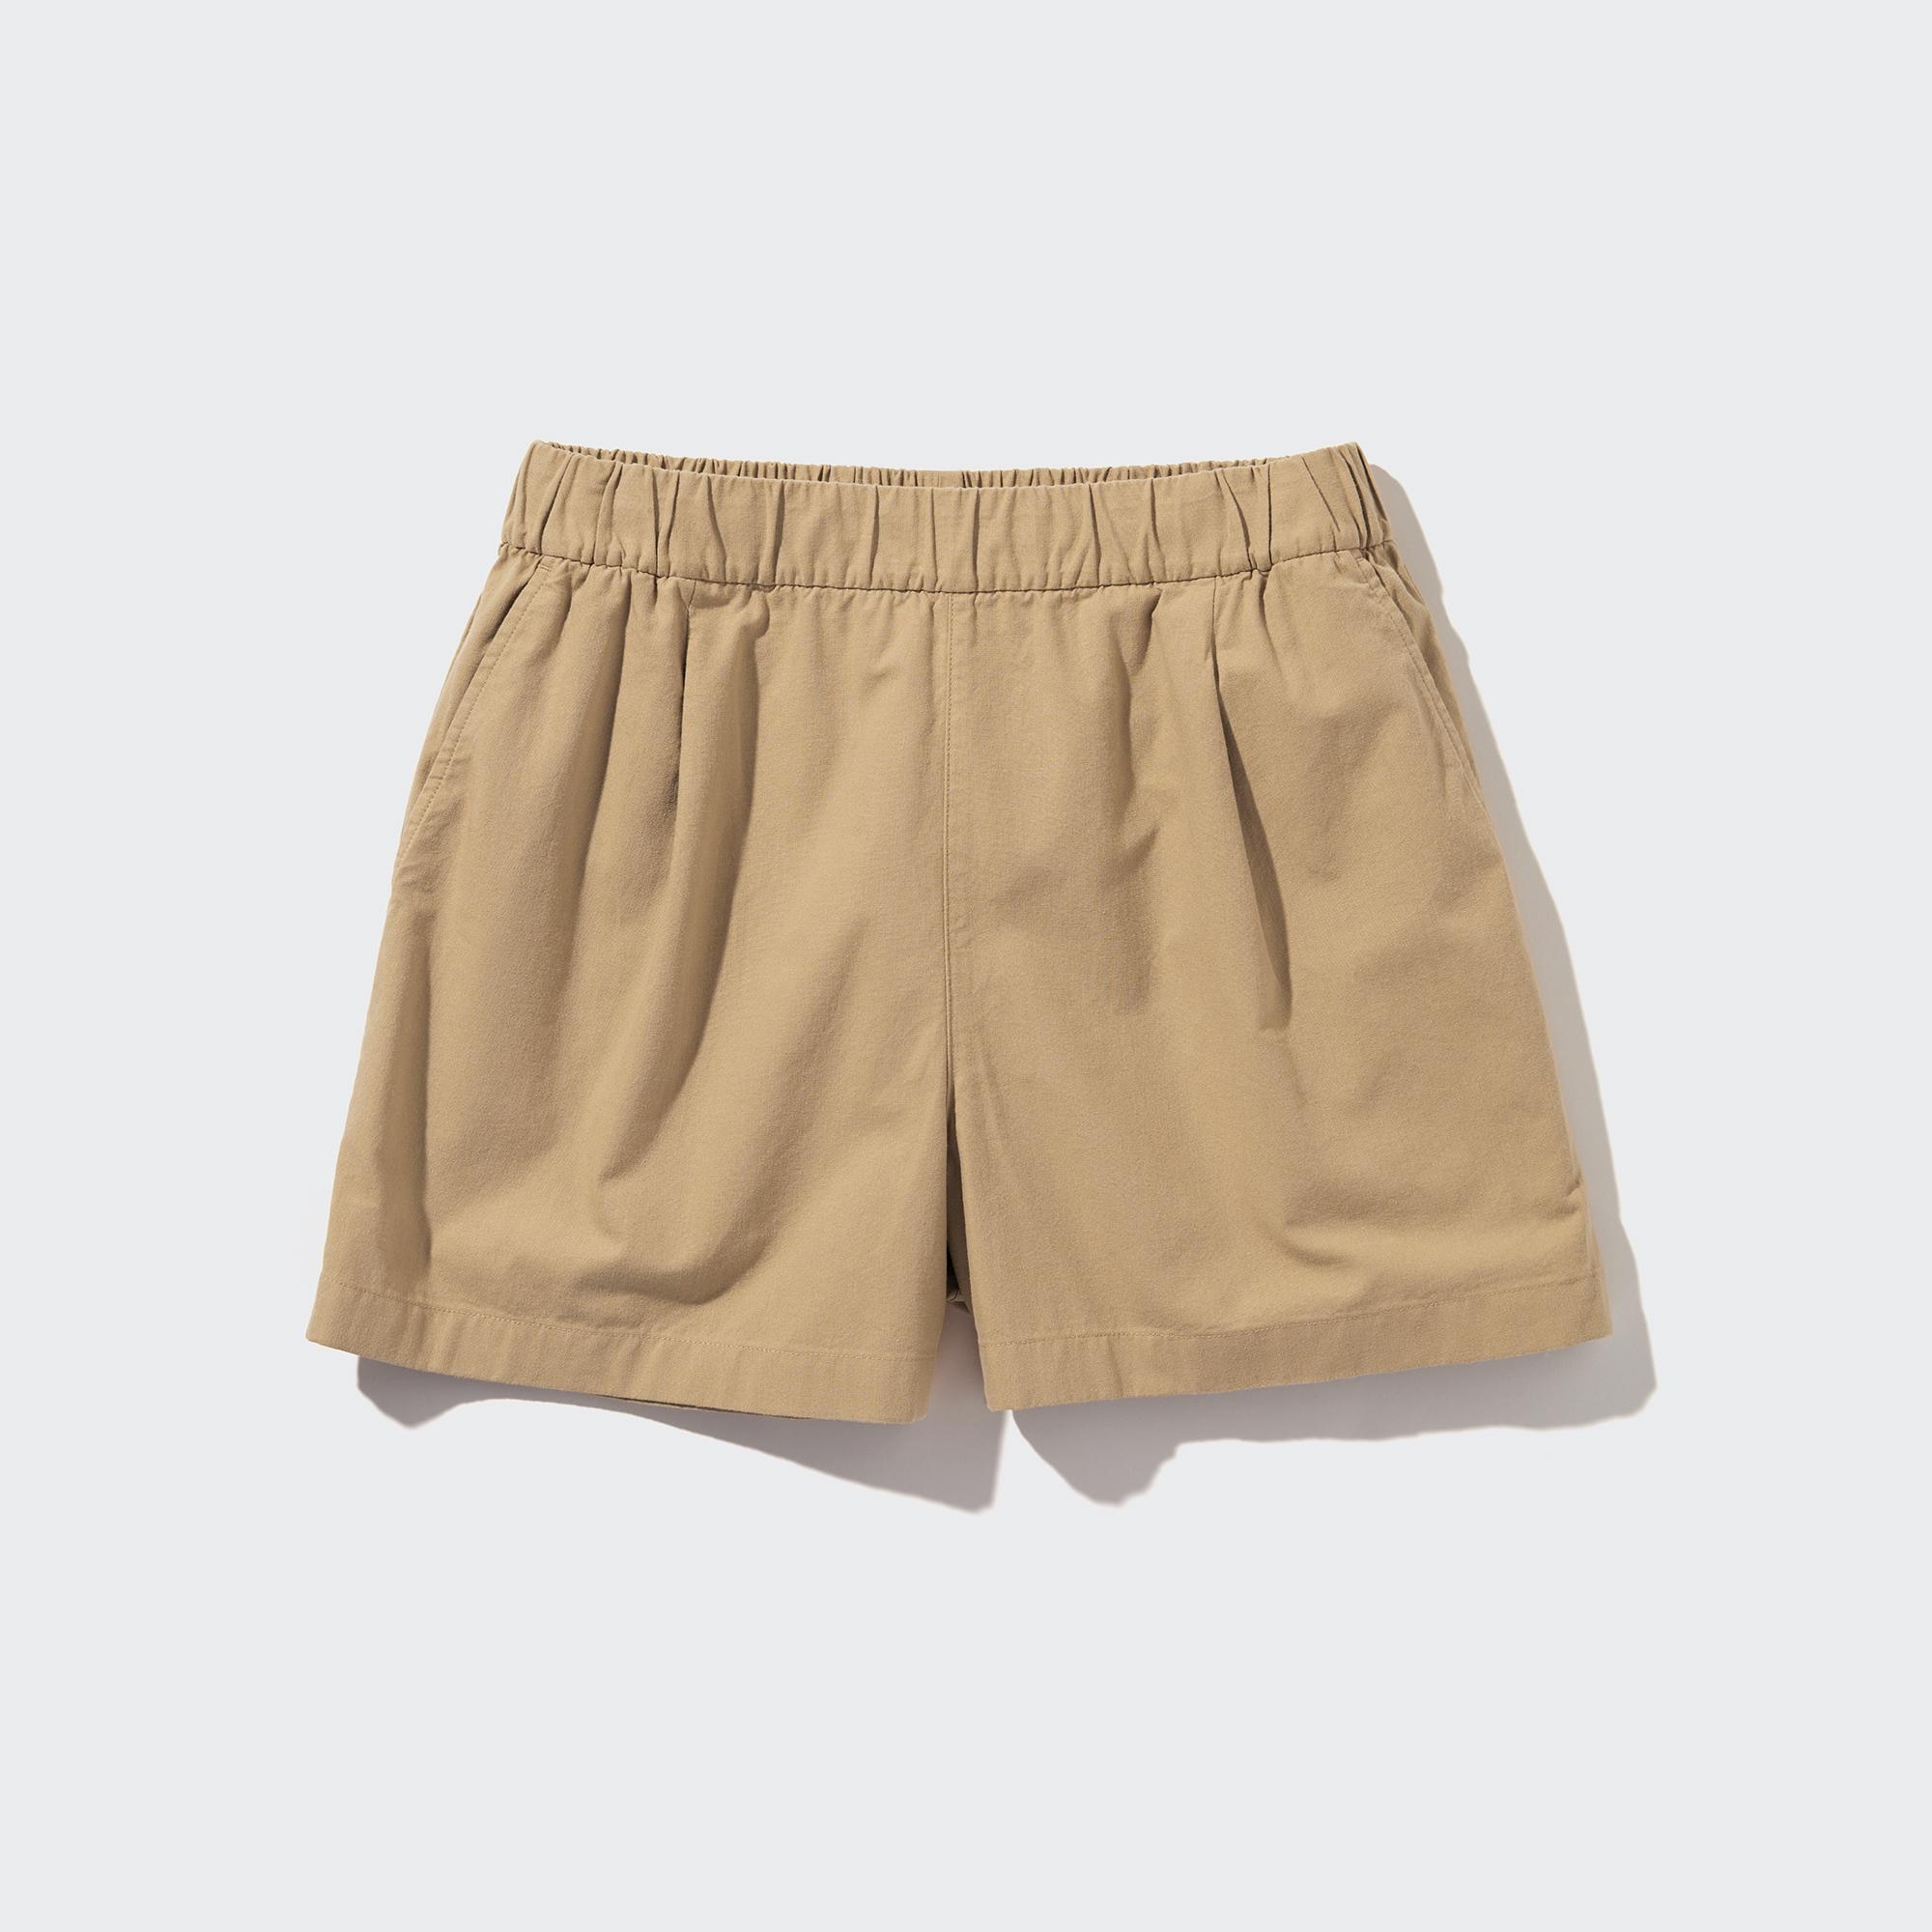 ENNOY Cotton Easy Shorts - パンツ